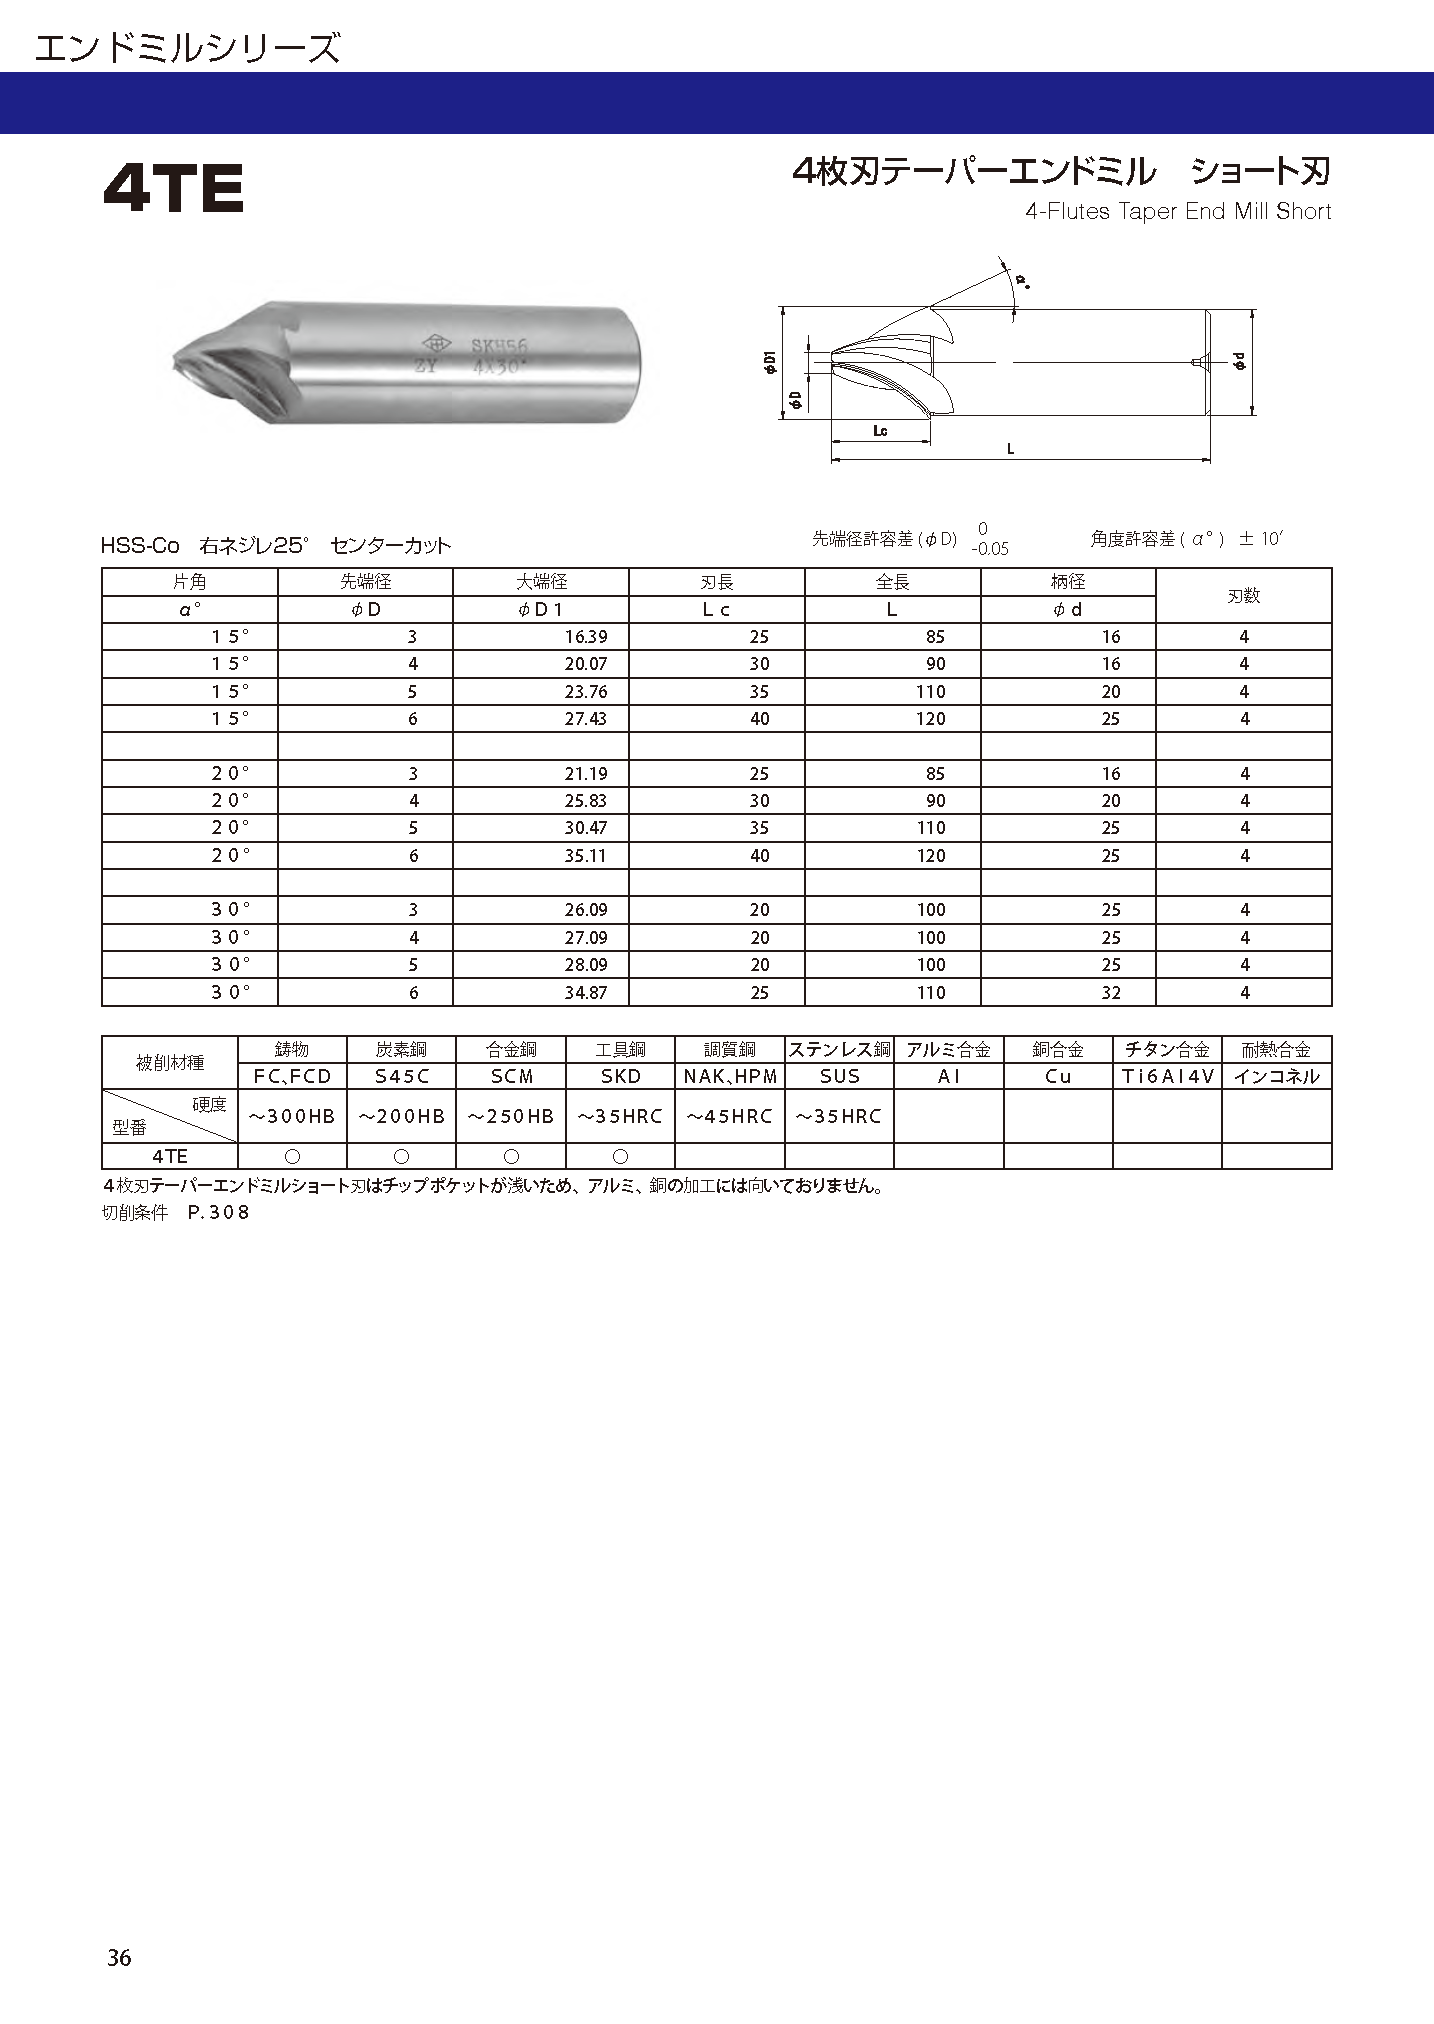 4枚刃テーパーエンドミル ショート刃 - 大洋ツール株式会社 - ハイス工具、切削工具の設計、製作、販売